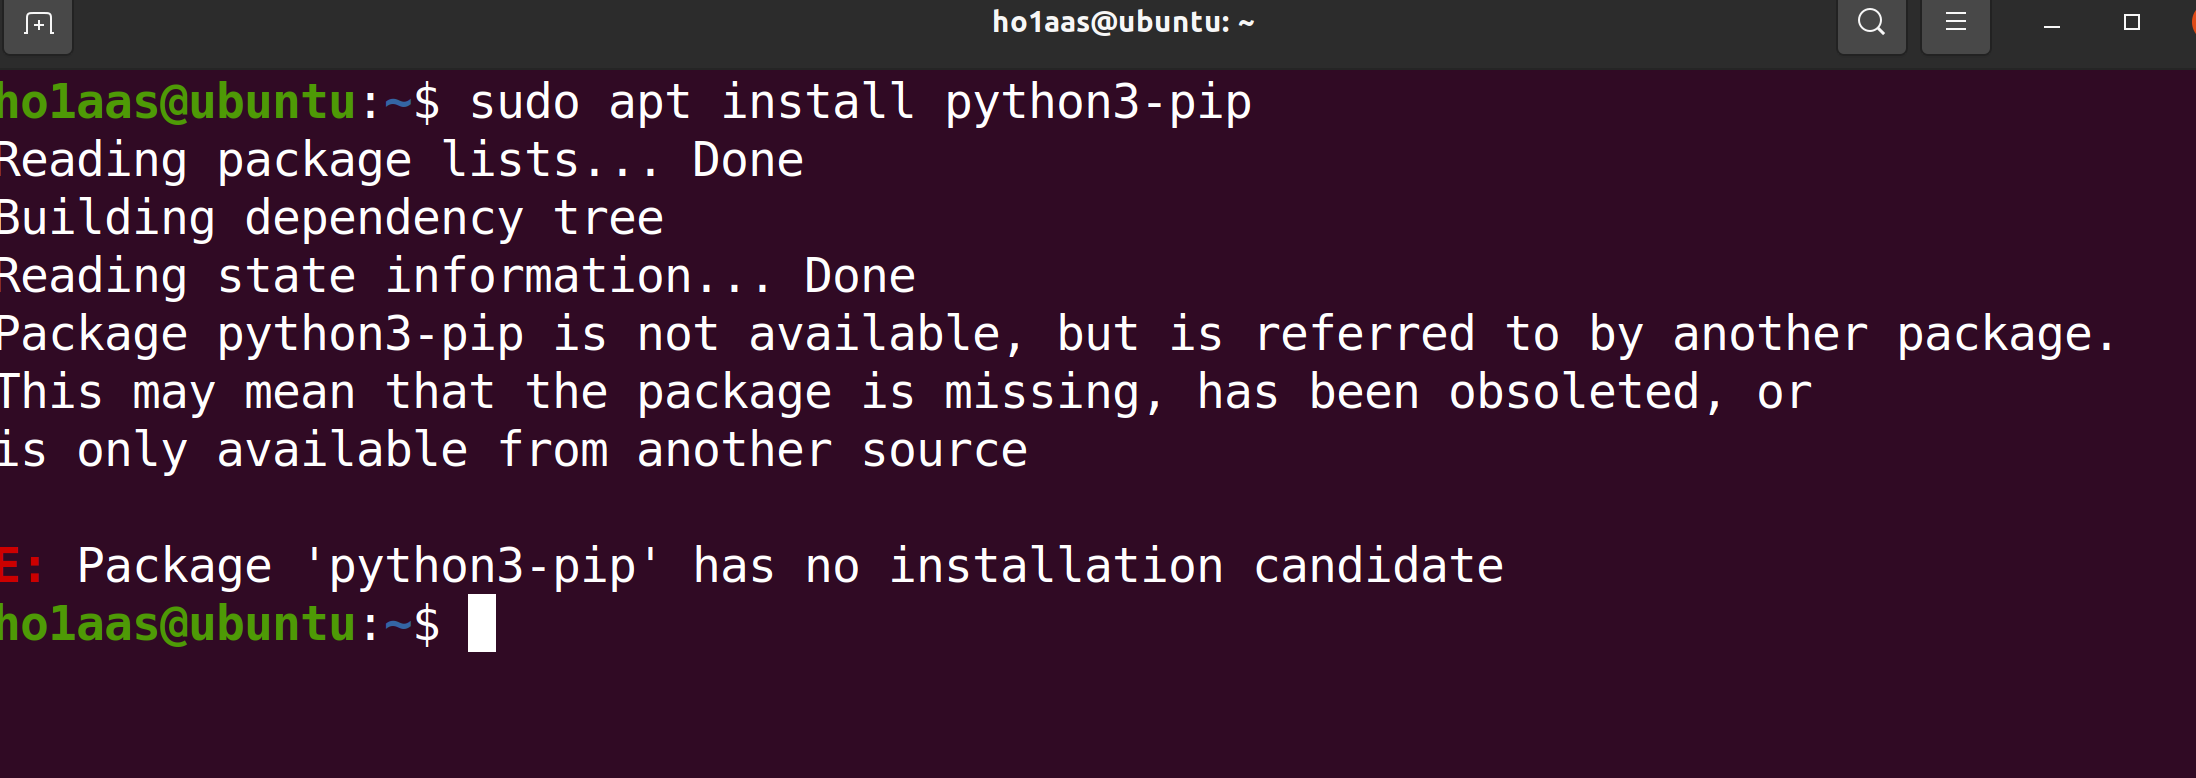 『踩坑记录』Ubuntu安装python3-pip报错Package ‘python3-pip‘ has no installation candidate